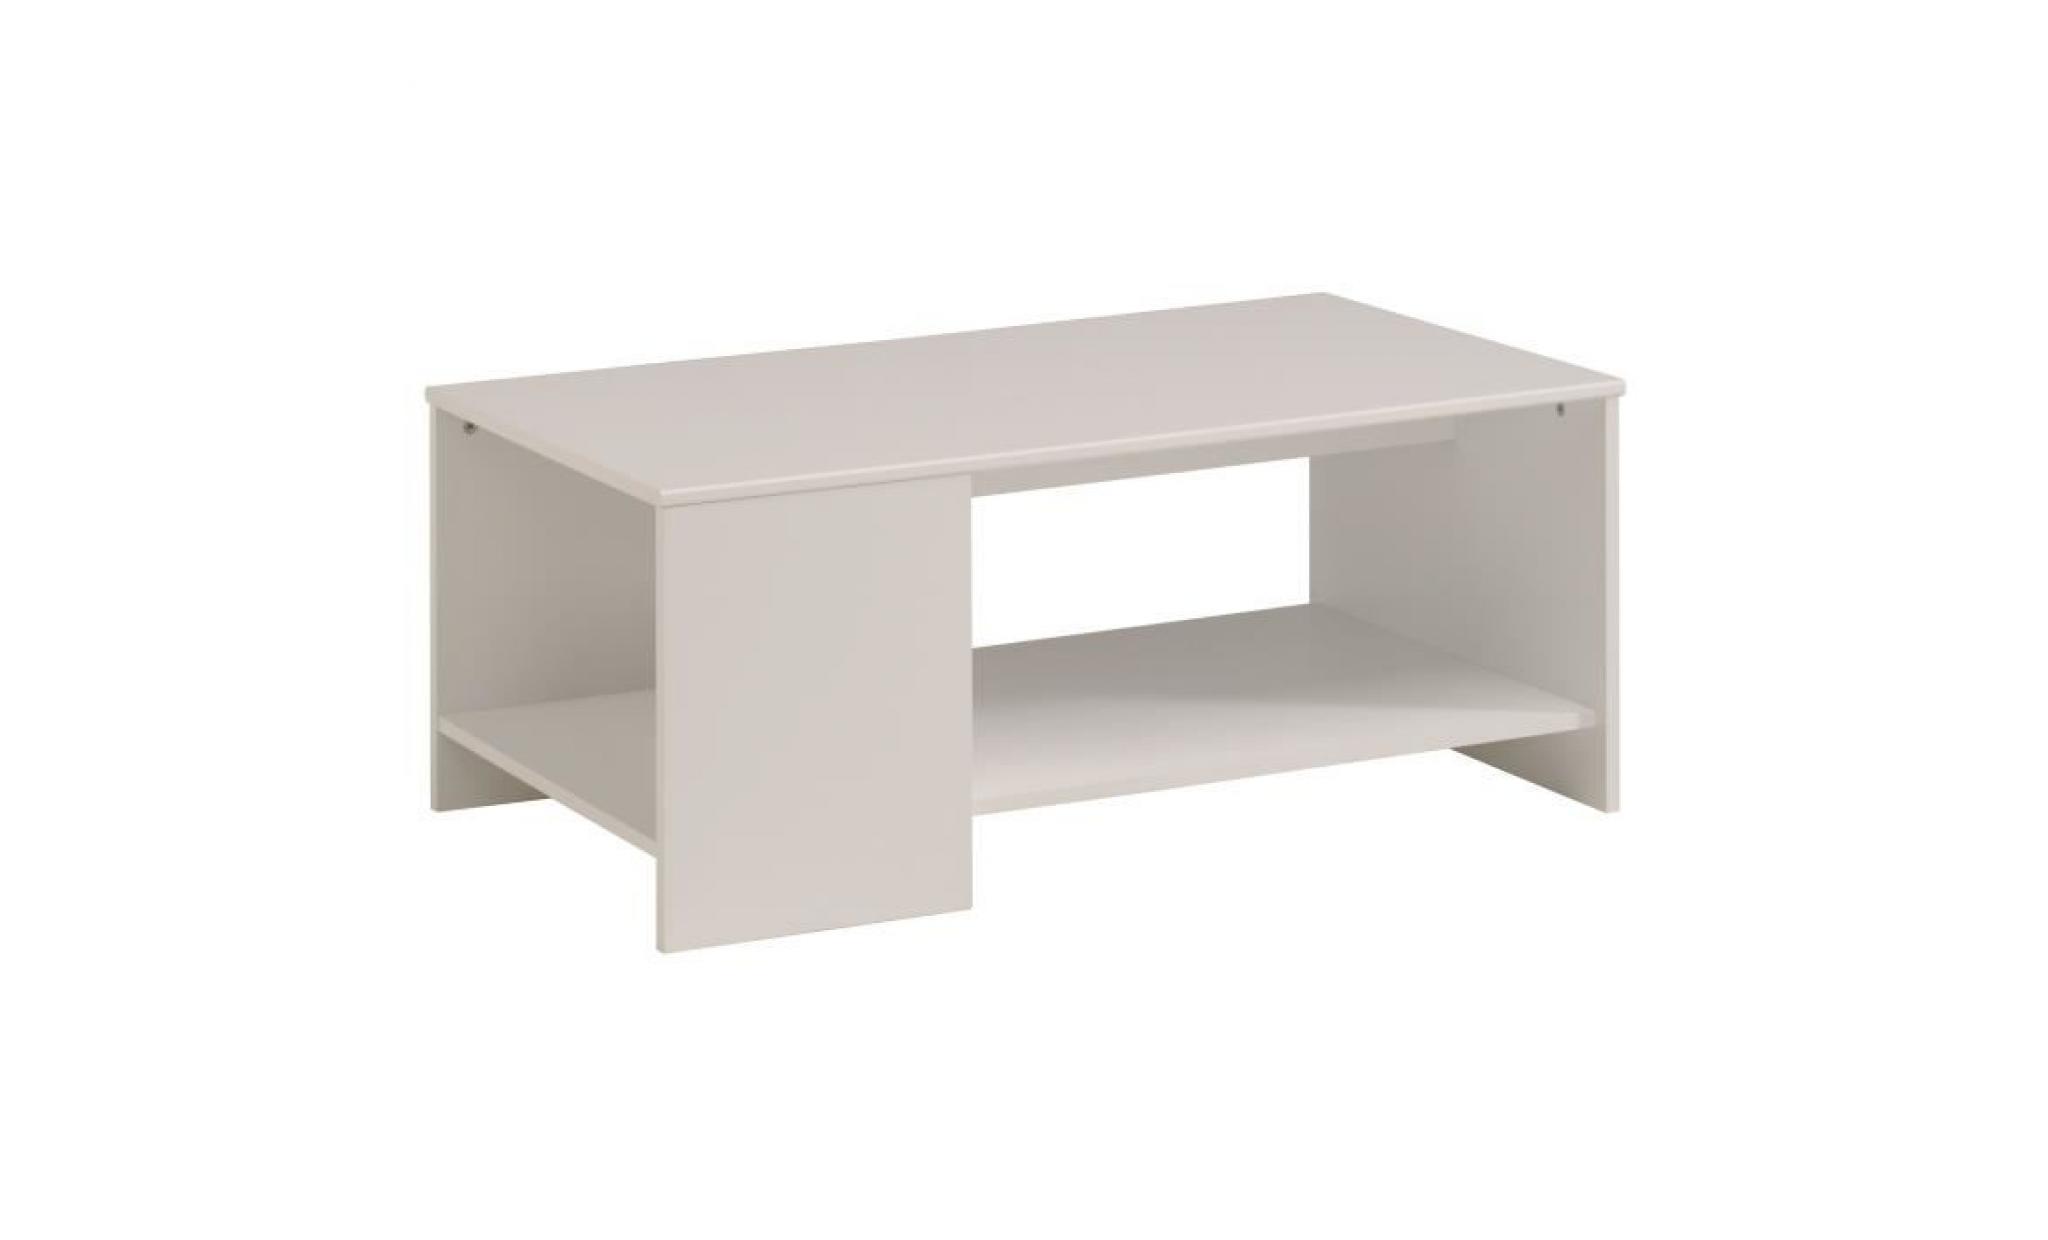 essentielle table basse style contemporain blanc   l 98 cm